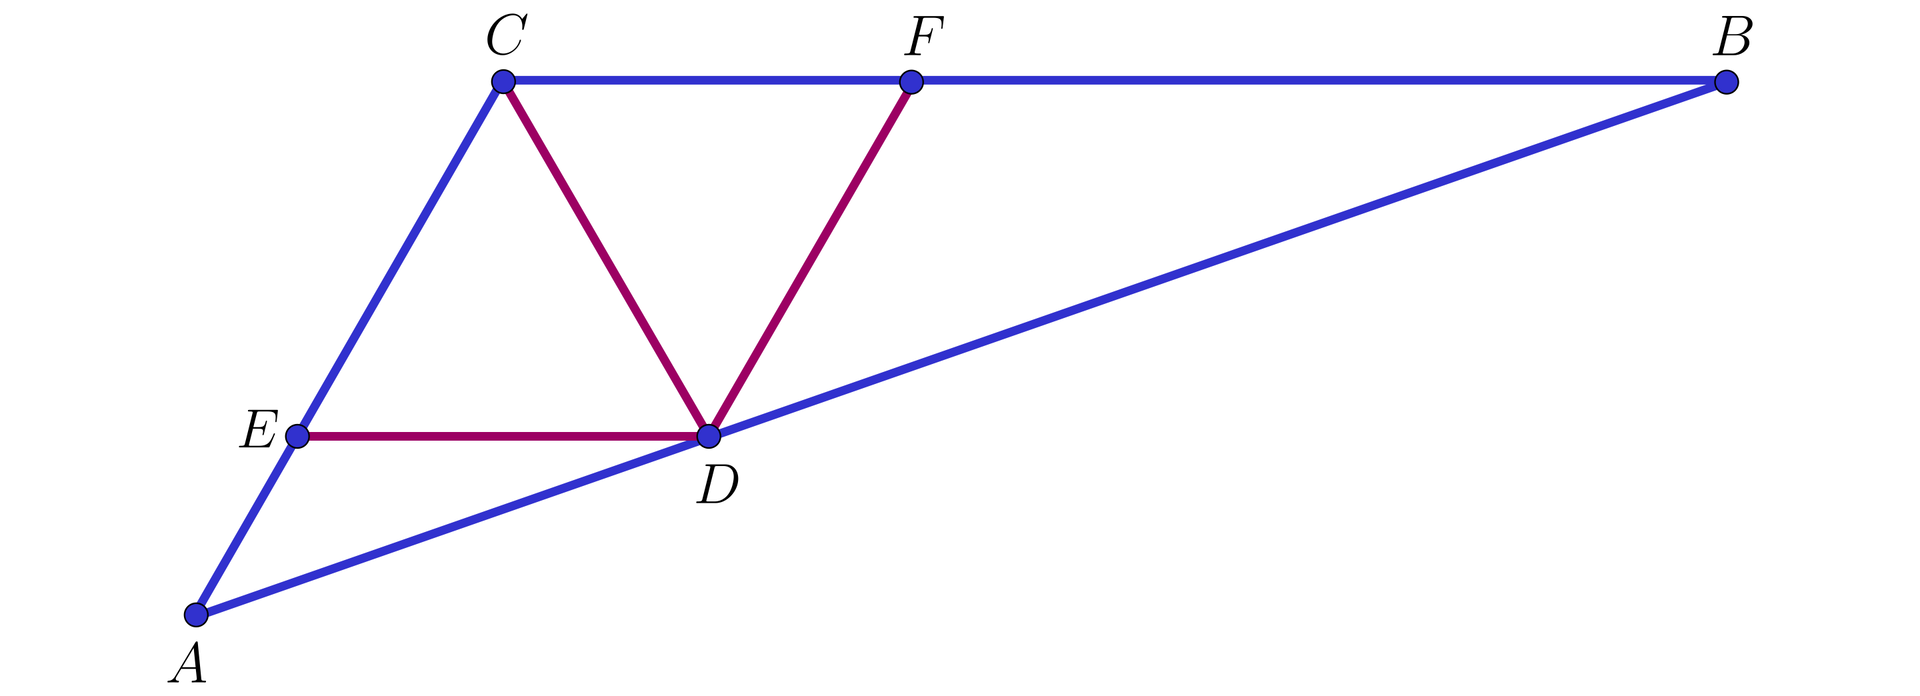 Na ilustracji przedstawiono trójkąt ABC. Zaznaczono punkt E na boku AC, punkt F na boku BC, oraz punkt D na boku AB. Zaznaczono trzy odcinki, łączące punkt D z punktem E, wierzchołkiem C, oraz punktem F.